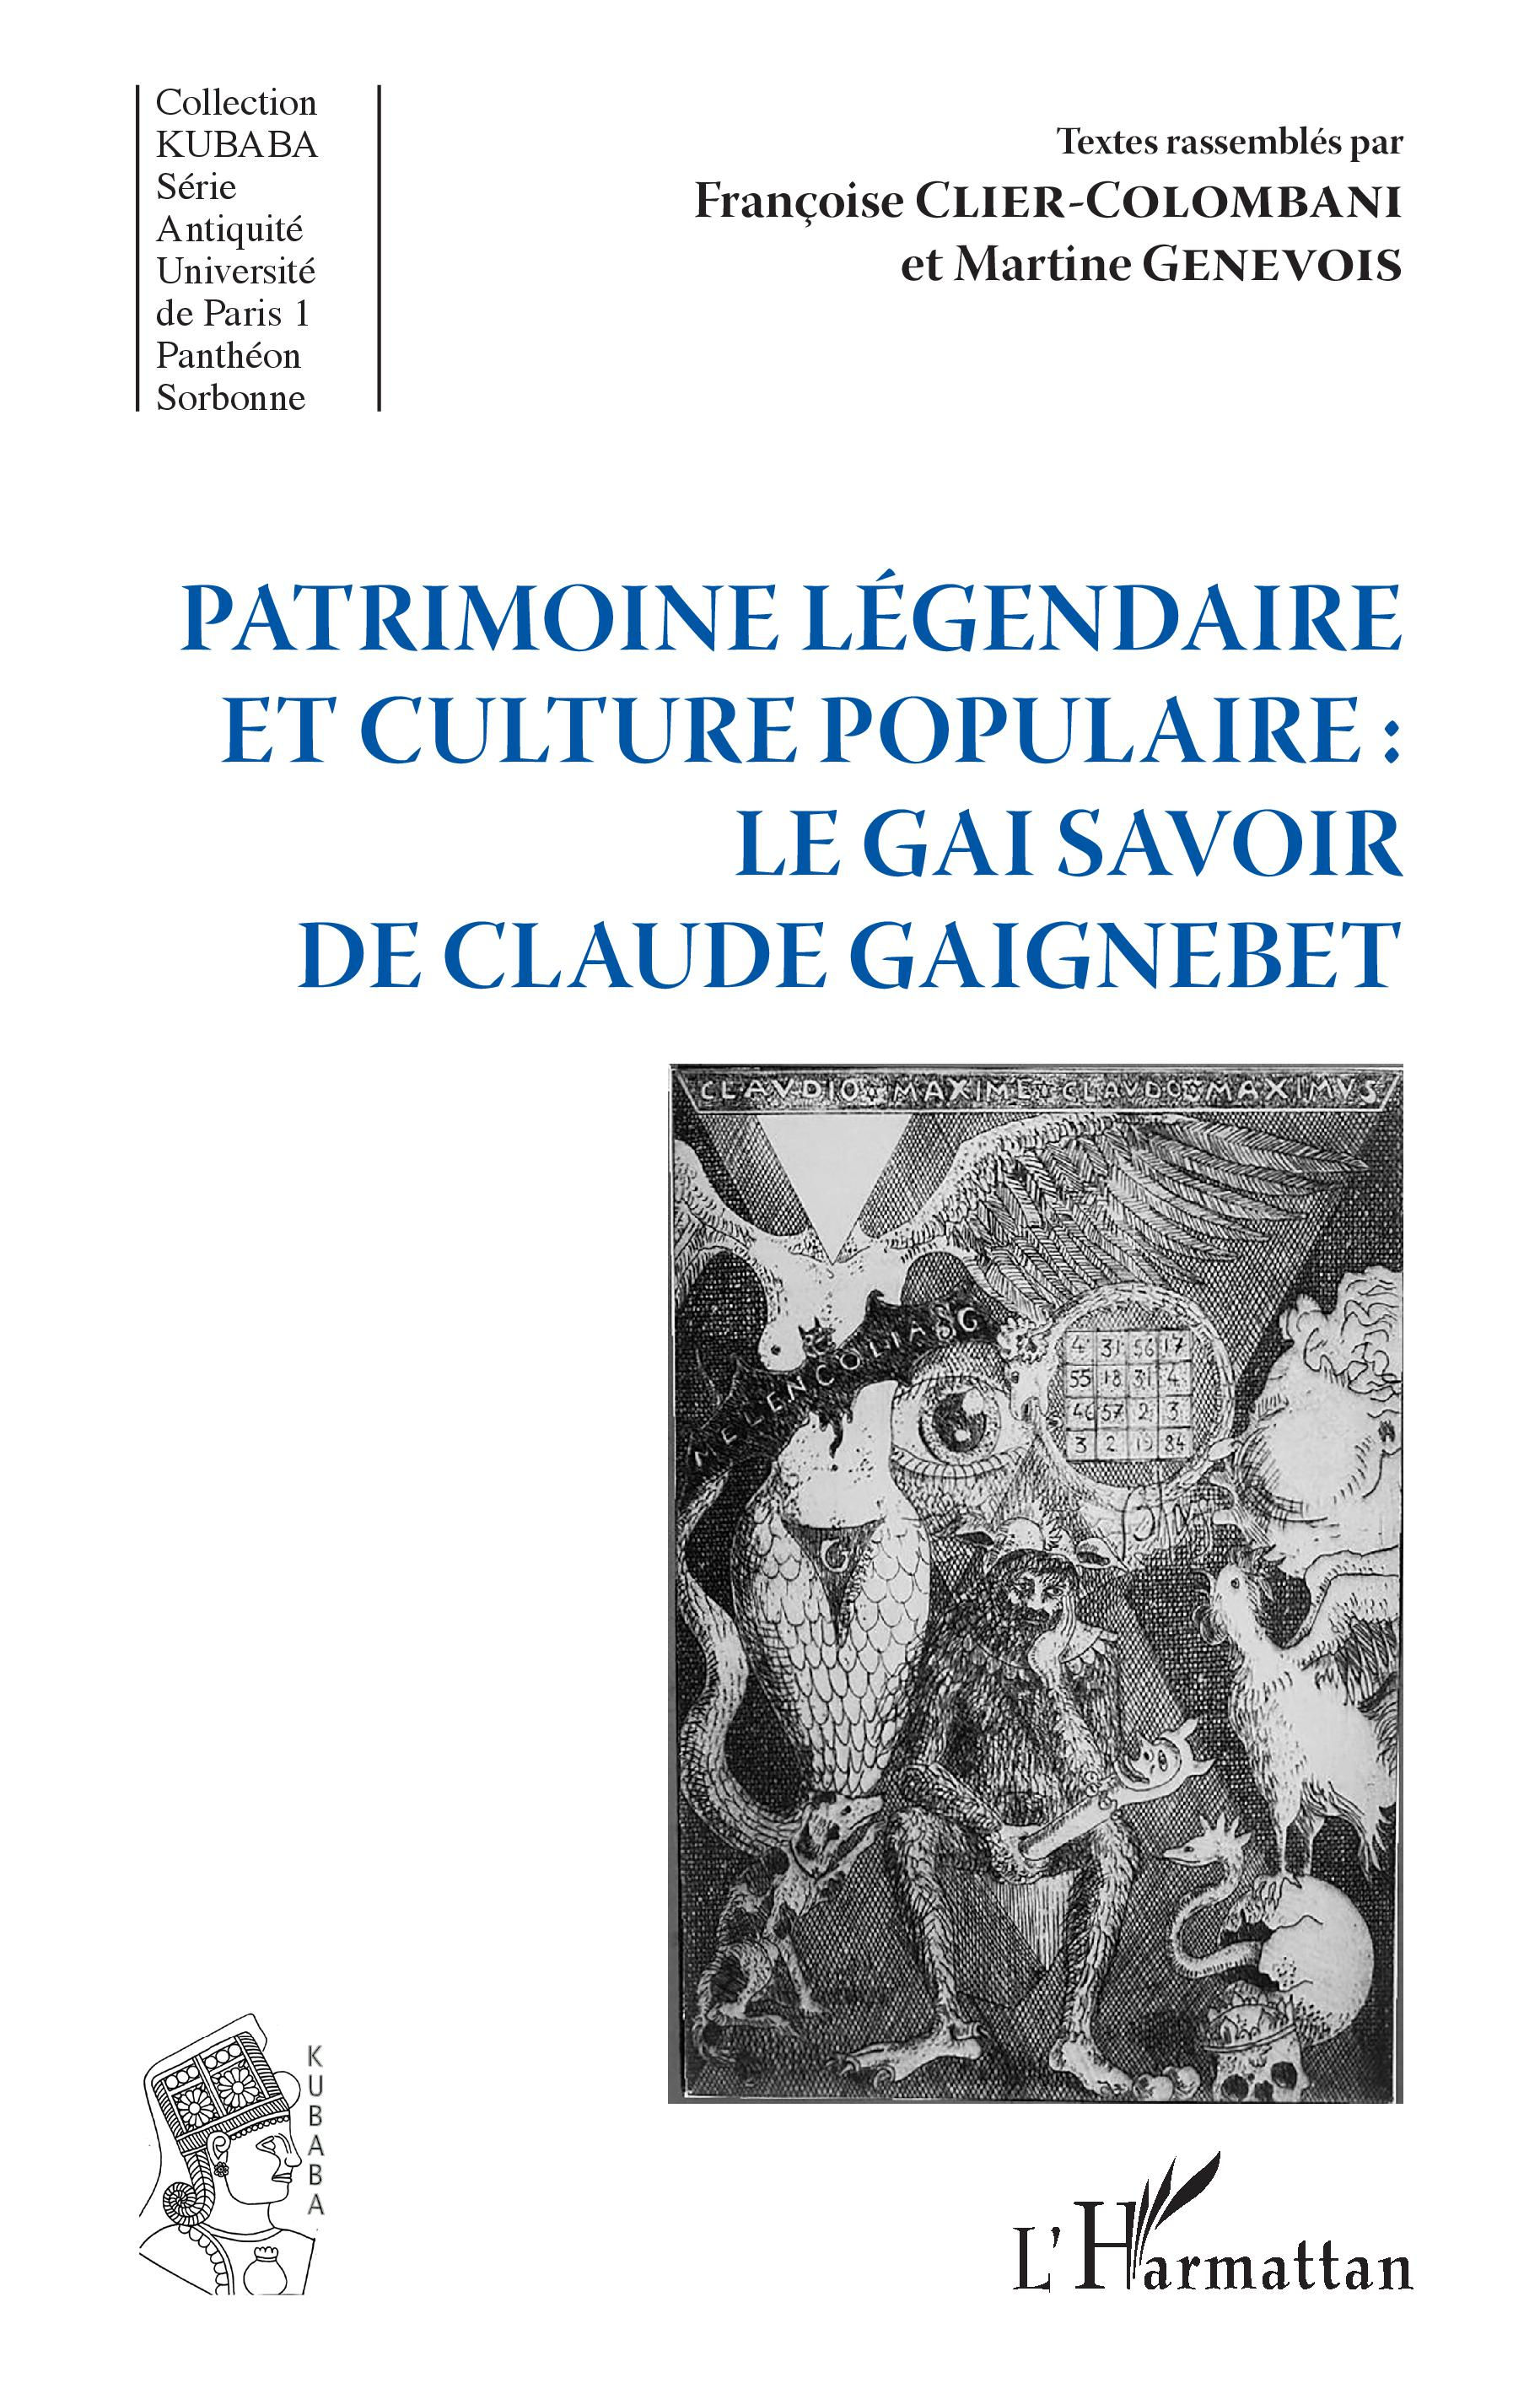 CLIER-COLOMBANI et GENEVOIS Patrimoine légendaire et culture populaire : le Gai Savoir de Claude Gaignebet Librairie Eklectic